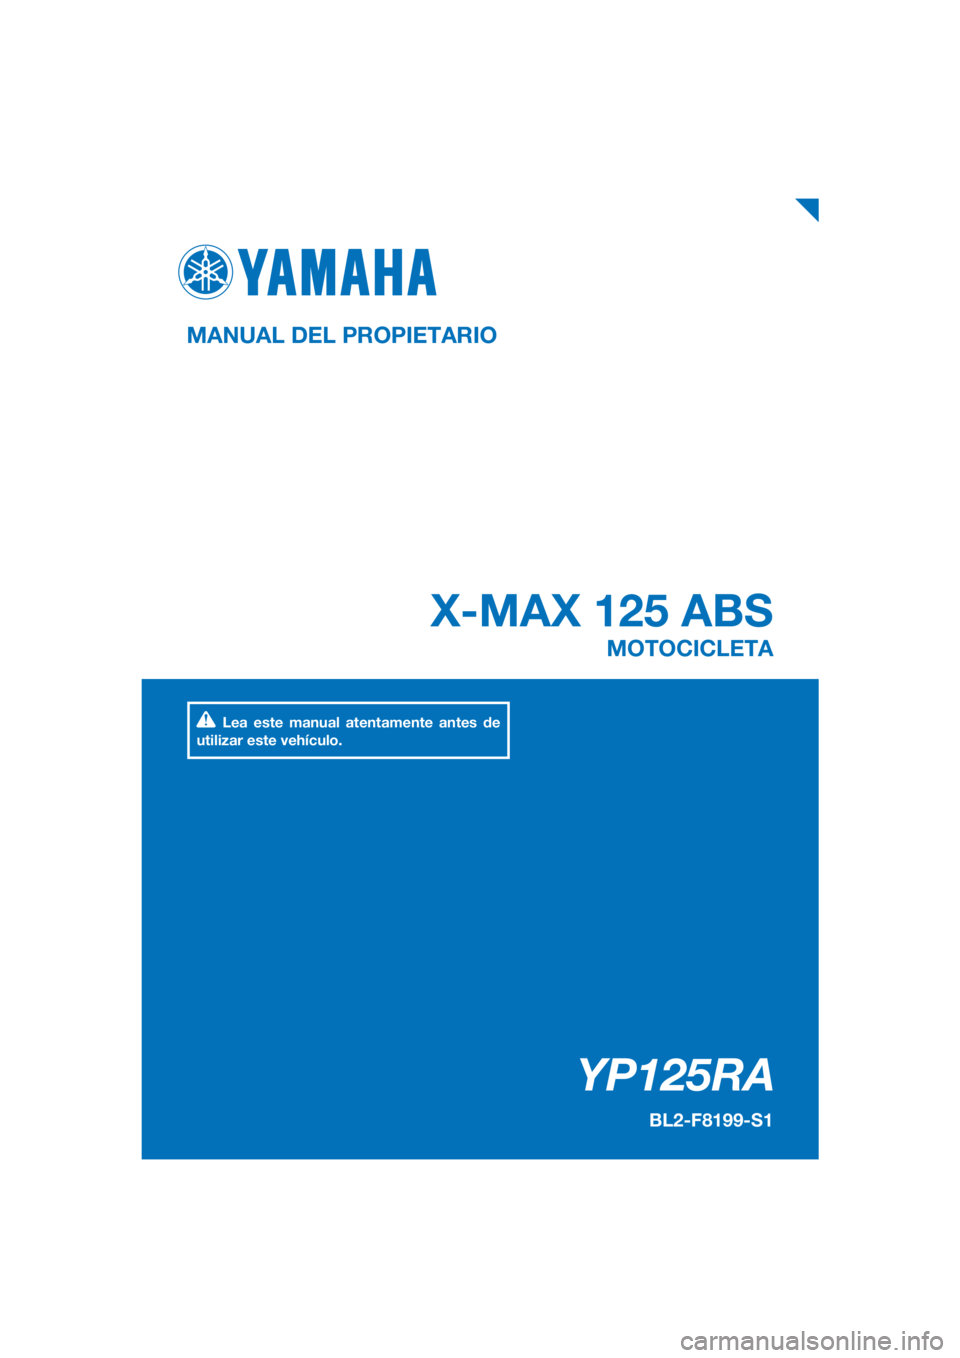 YAMAHA XMAX 125 2018  Manuale de Empleo (in Spanish) PANTONE285C
YP125RA
X-MAX 125 ABS
MANUAL DEL PROPIETARIO
BL2-F8199-S1
MOTOCICLETA
Lea este manual atentamente antes de 
utilizar este vehículo.
[Spanish  (S)] 